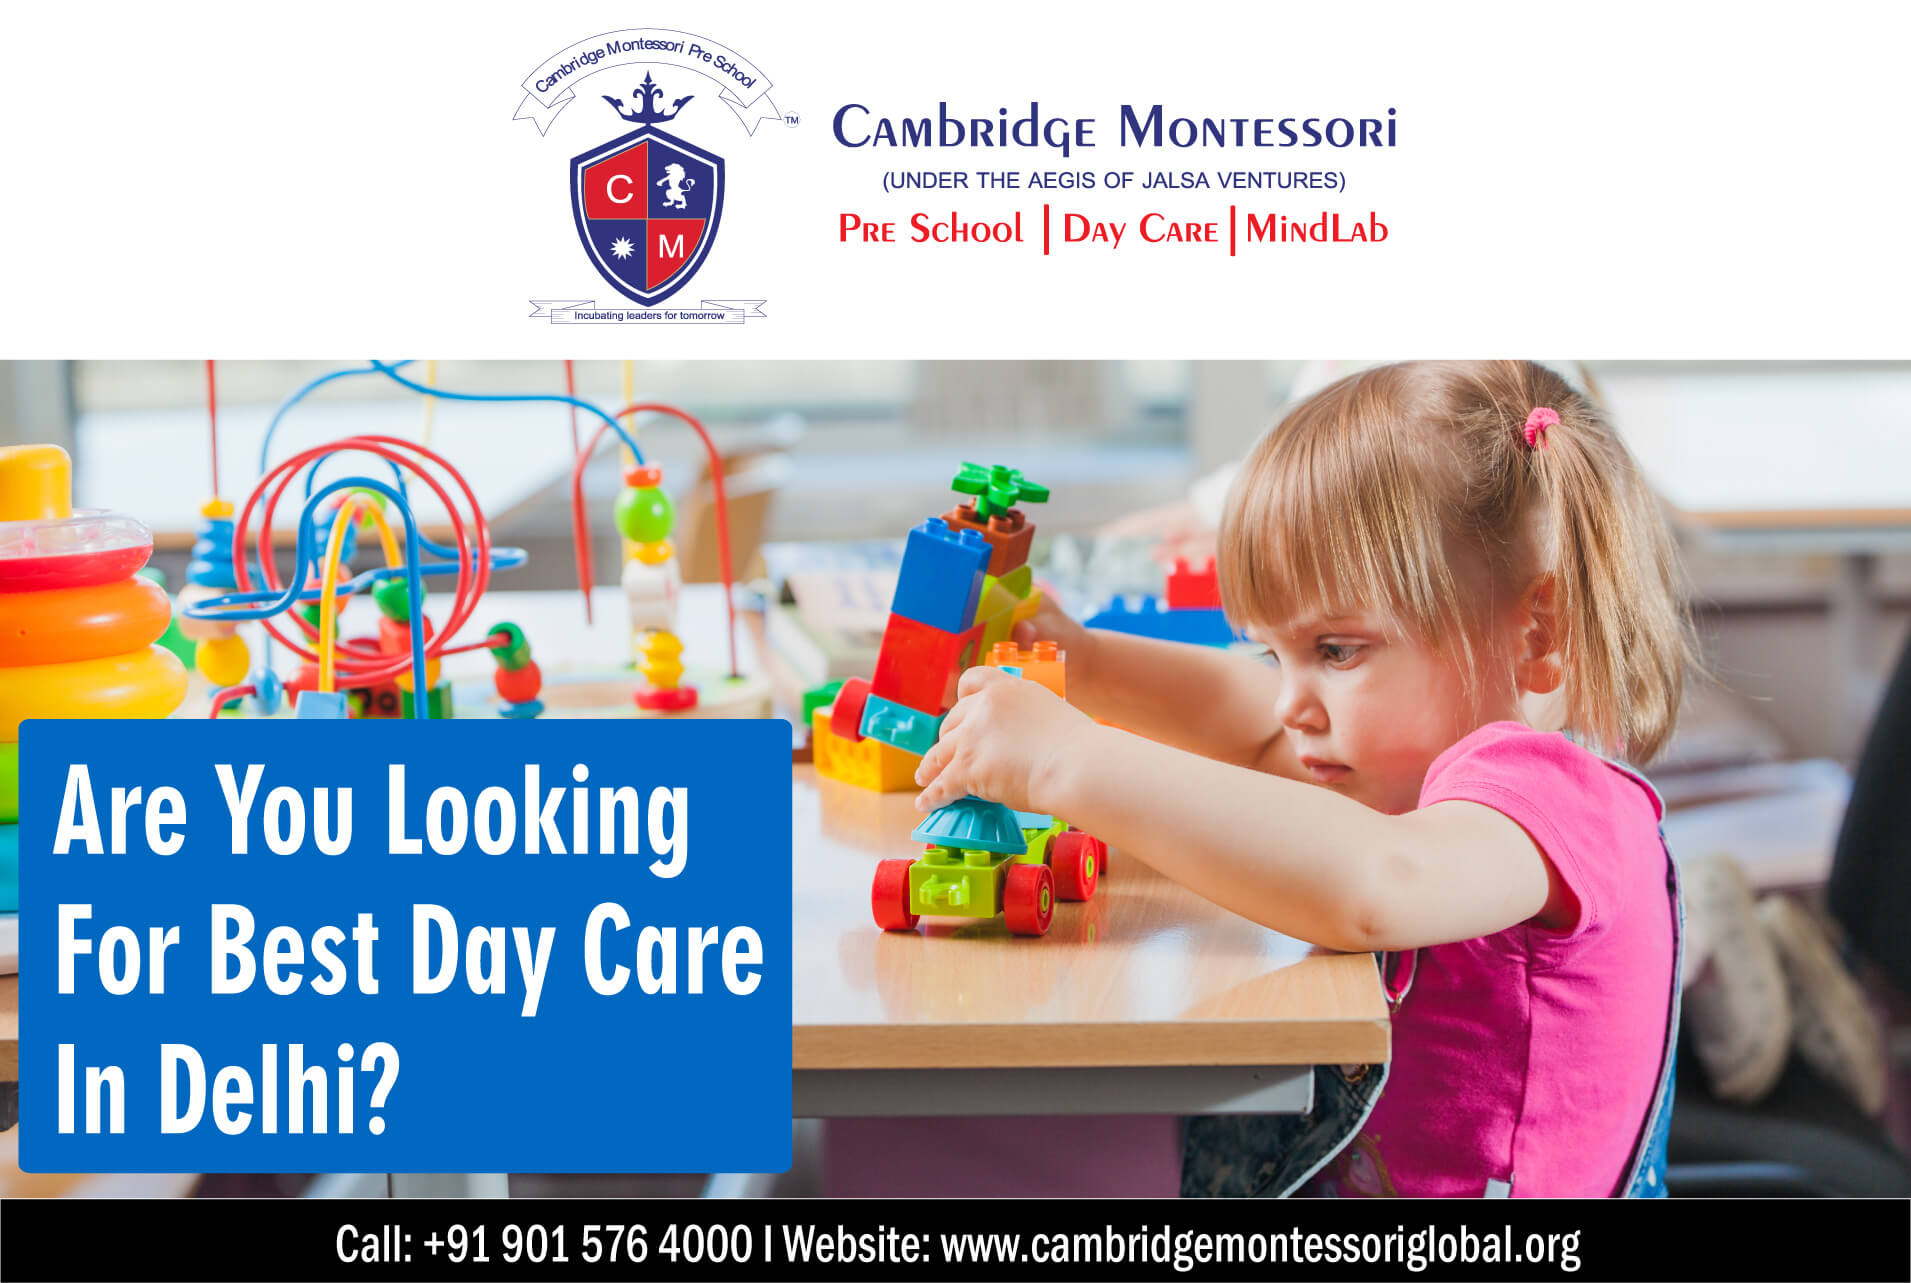 Best Daycare in Delhi | Cambridge Montessori Preschool